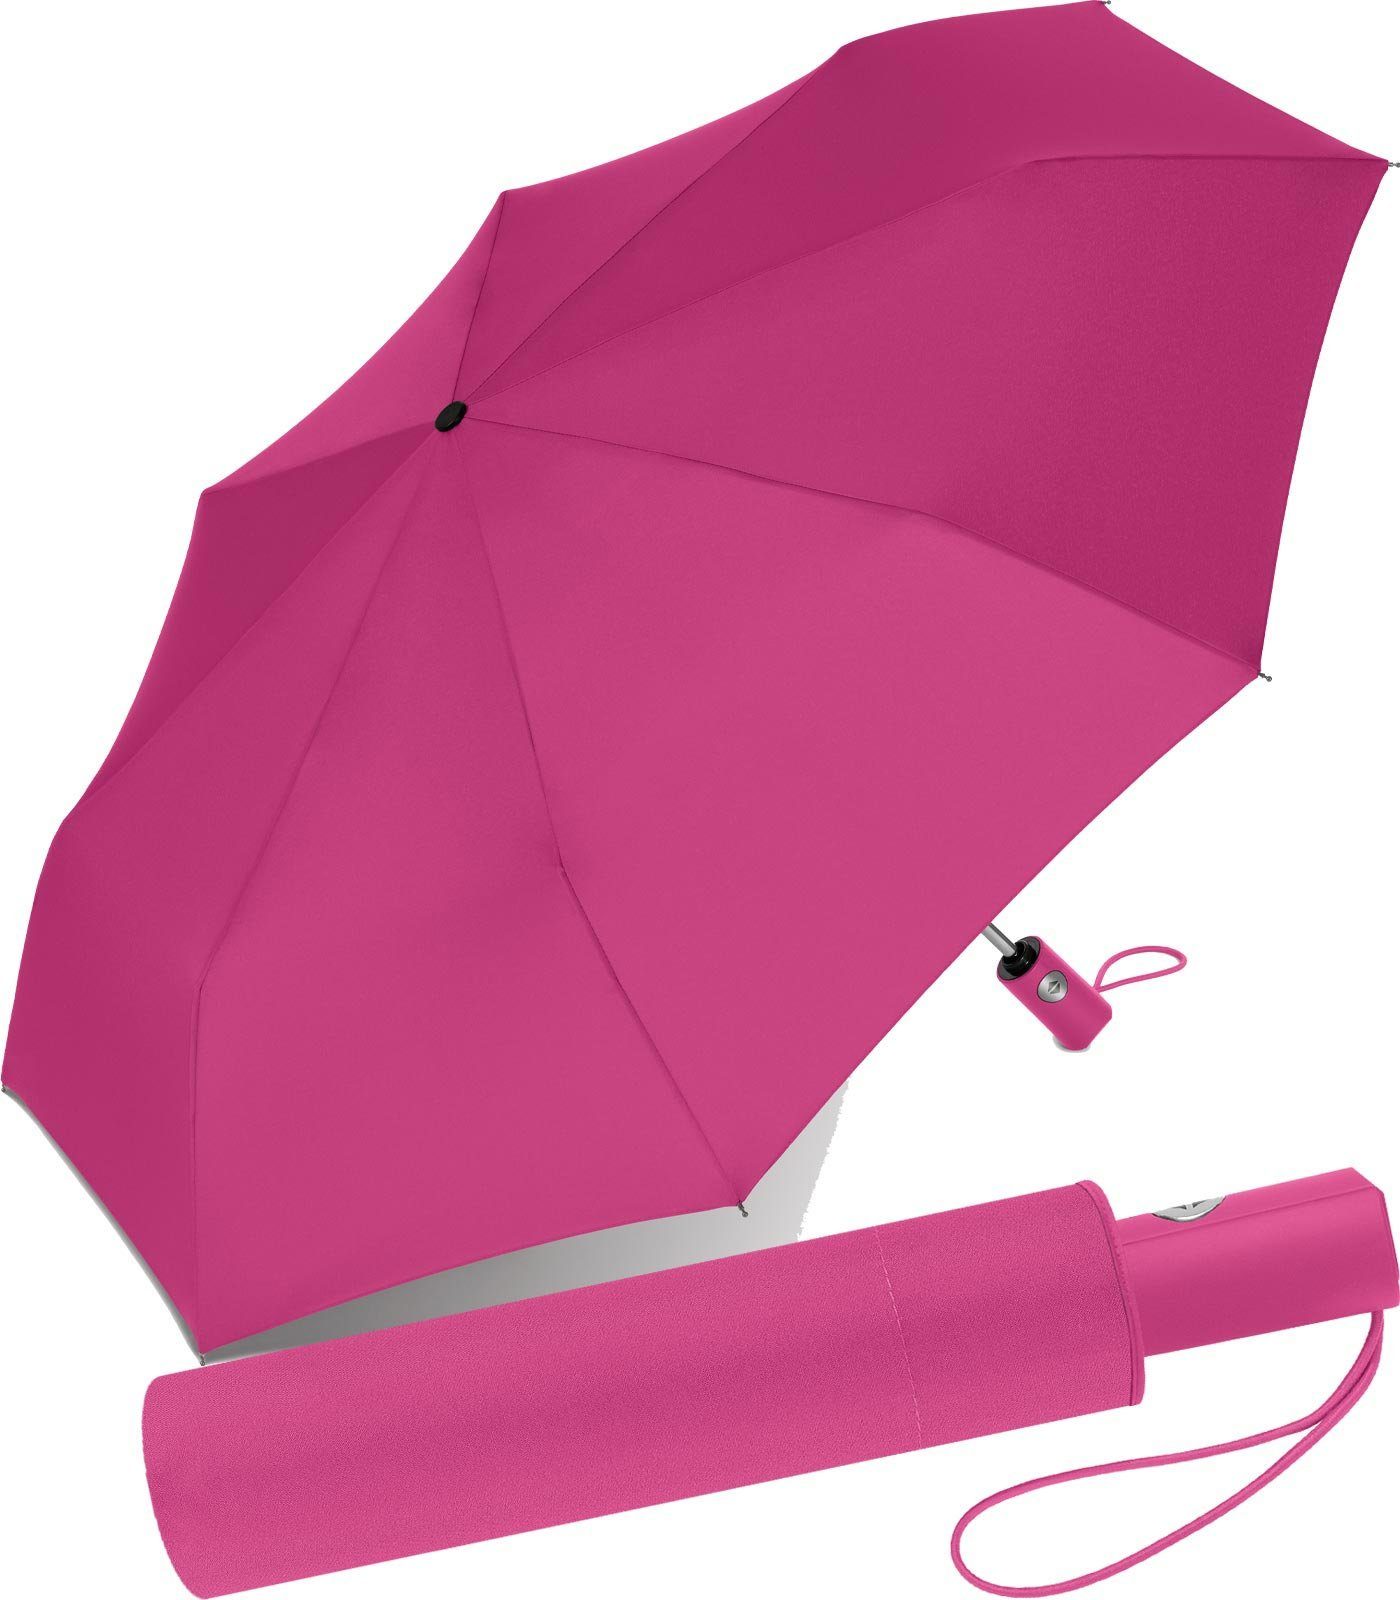 Niedrigster Versandpreis! RS-Versand Taschenregenschirm vielen Herren, schöner pink in für mit modischen Regenschirm Auf-Zu-Automatik, Damen stabiler Farben und